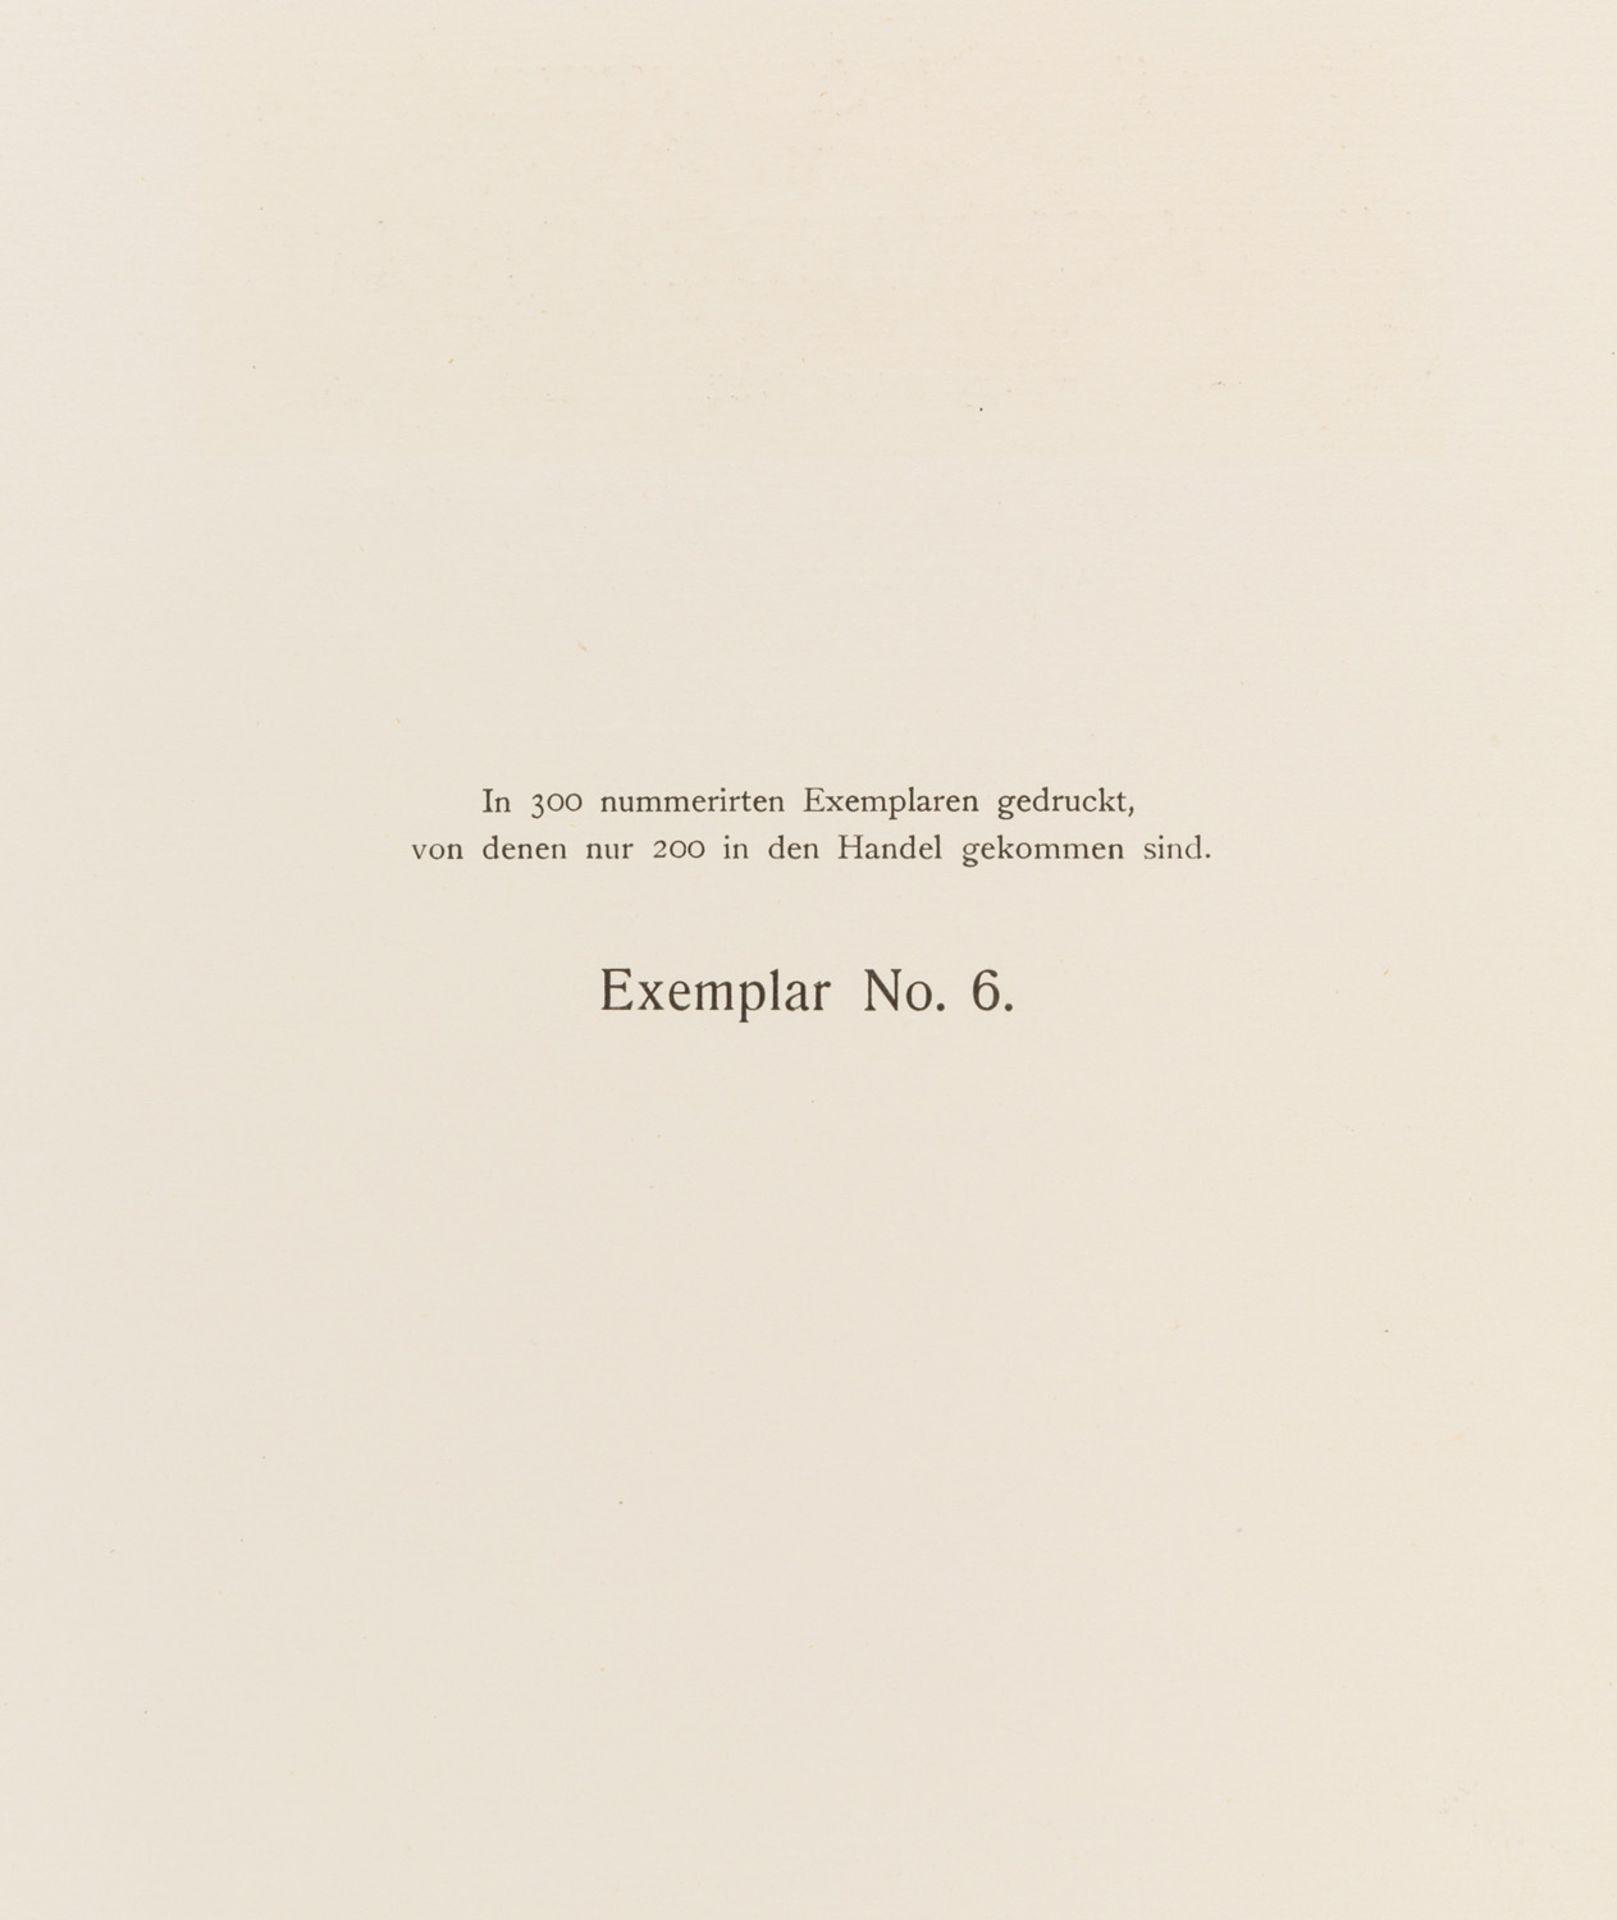 KLASSICH-ANTIKE GOLDSCHMIEDEARBEITEN IM BESITZE A.J. VON NELIDOW, 1903 - Bild 13 aus 17